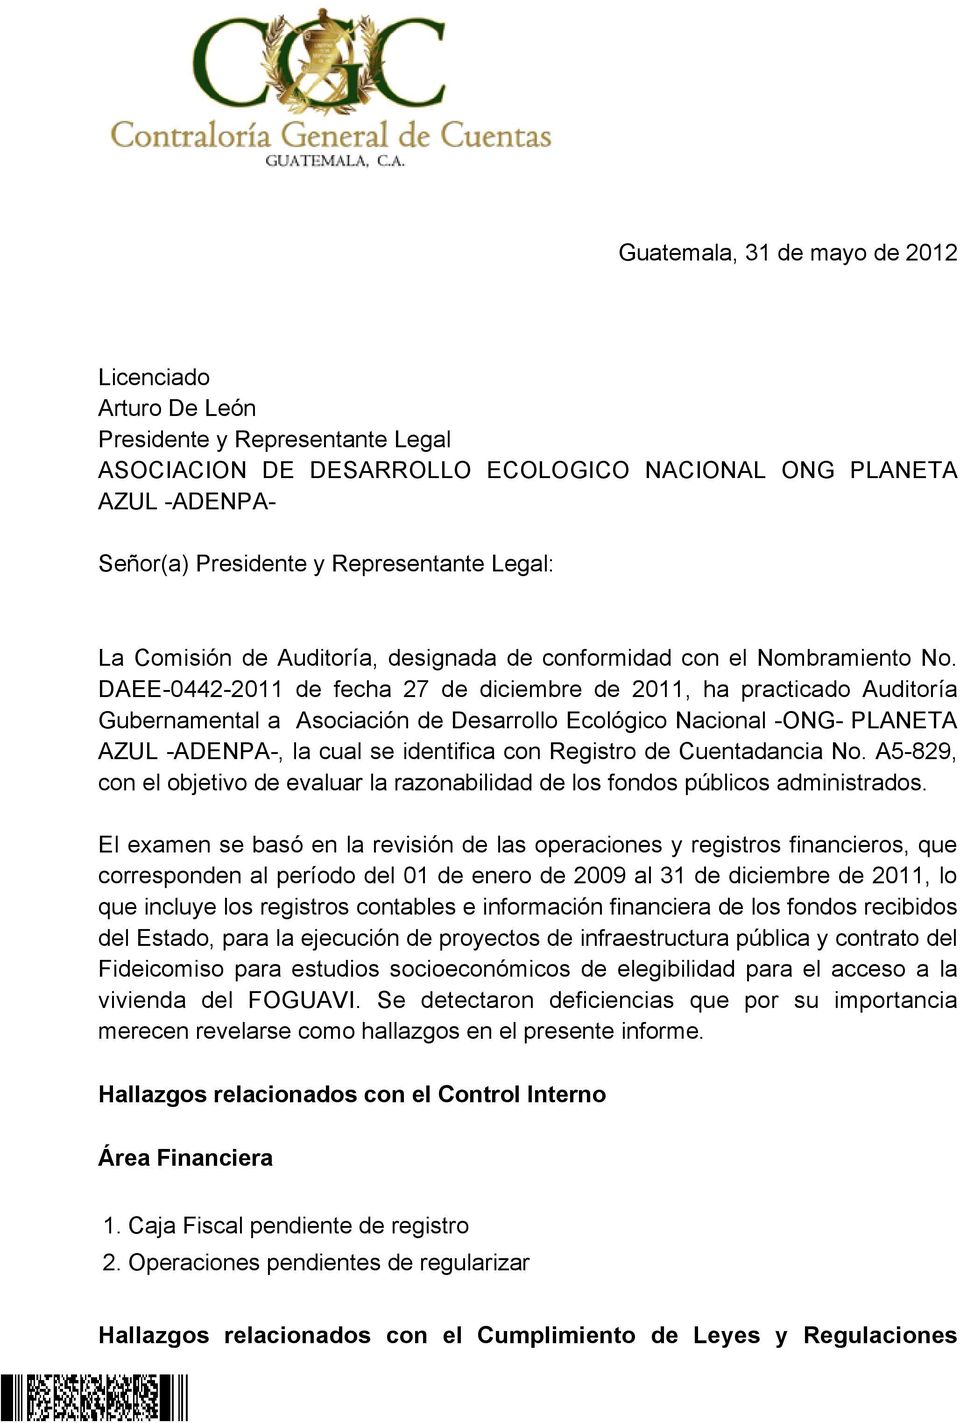 DAEE-0442-2011 de fecha 27 de diciembre de 2011, ha practicado Auditoría Gubernamental a Asociación de Desarrollo Ecológico Nacional -ONG- PLANETA AZUL -ADENPA-, la cual se identifica con Registro de